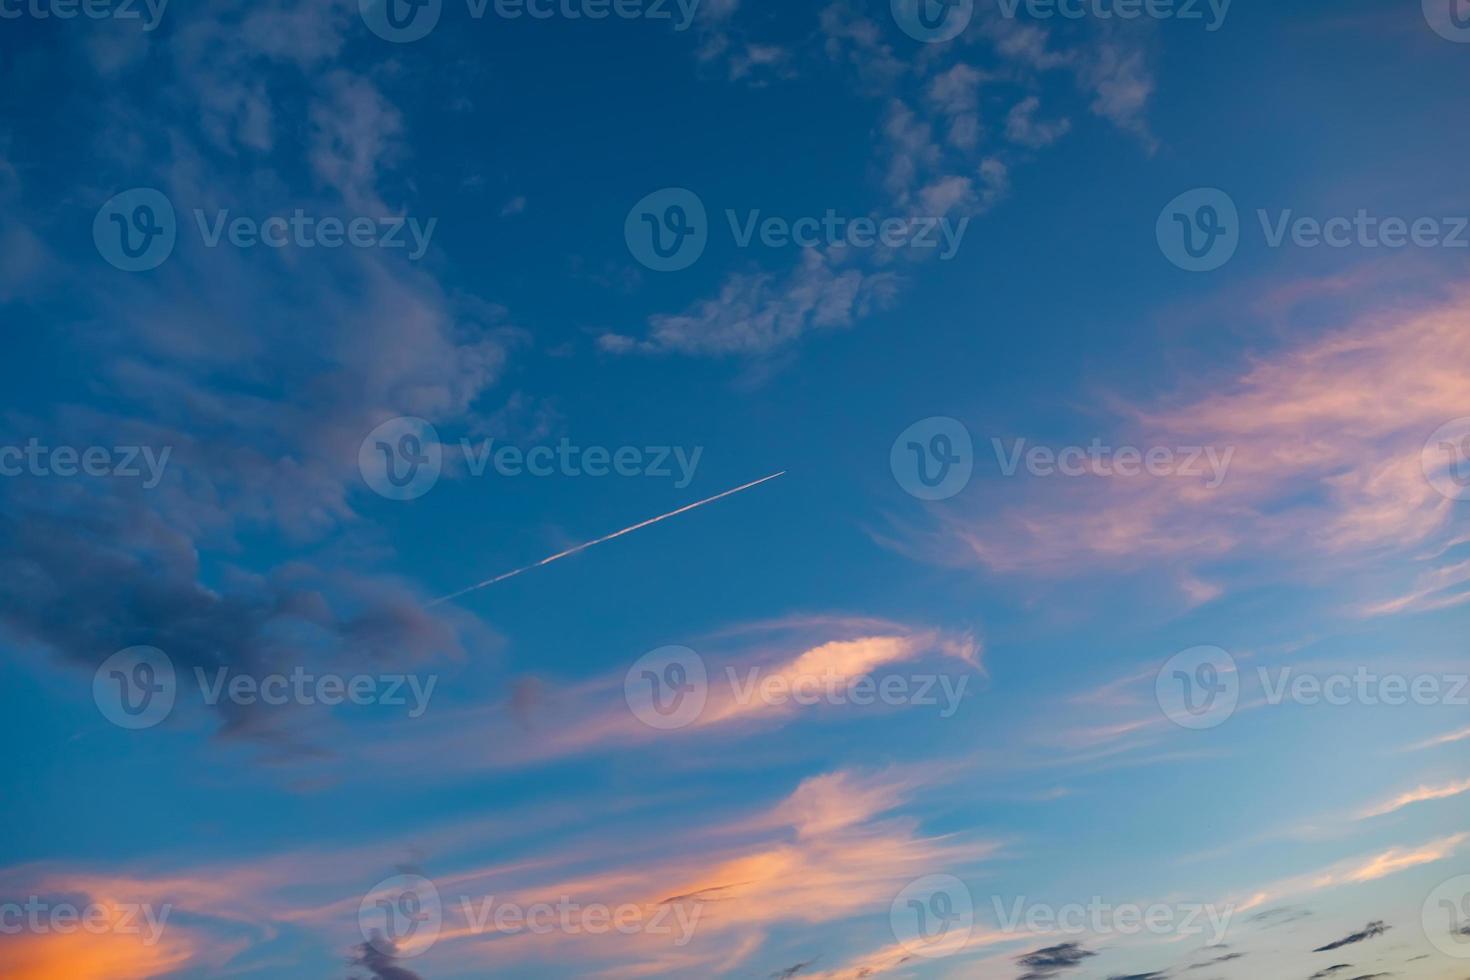 blå himmel med moln och ett plan högt i luften flyger till sin destination vid solnedgång eller soluppgång och lämnar en vit rand efter sig. foto